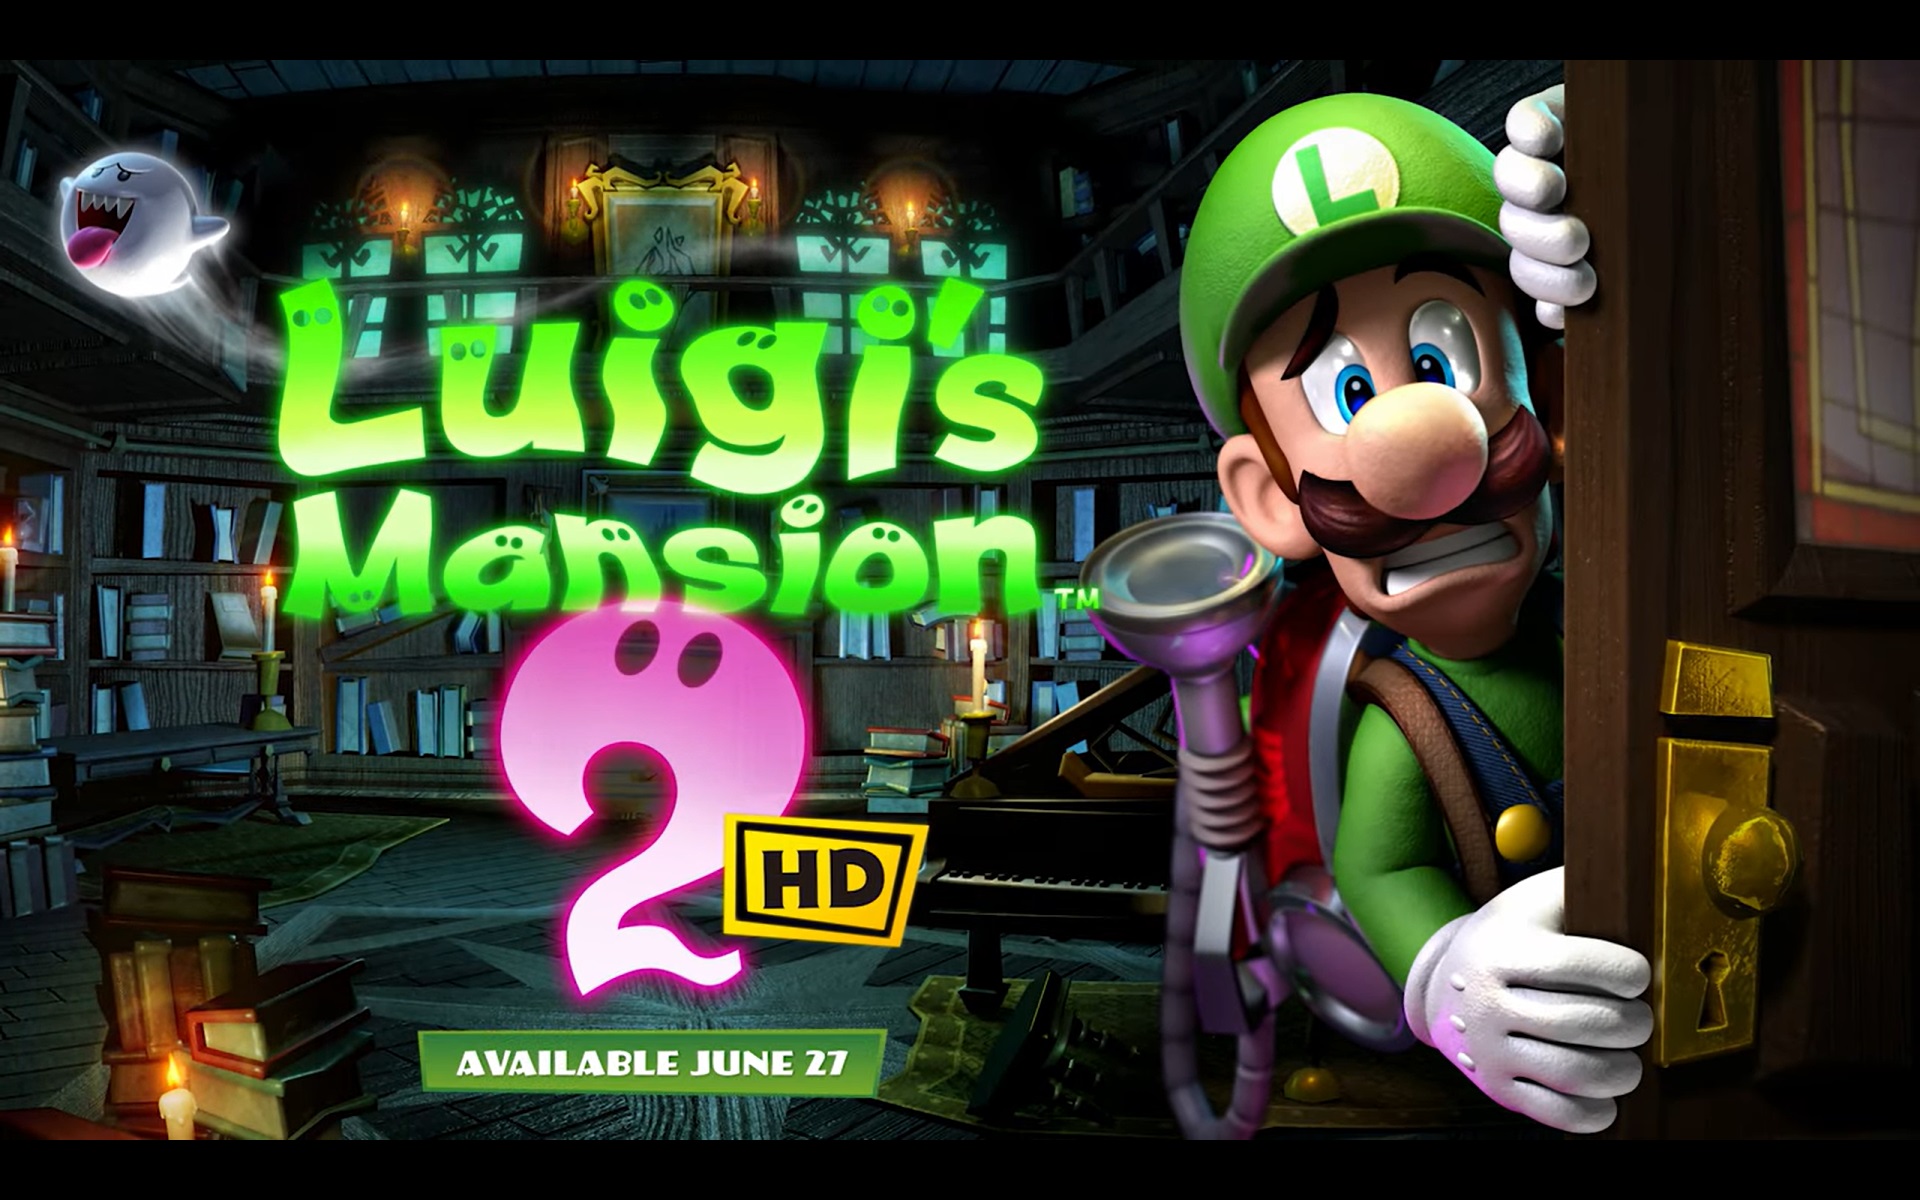 Luigi's Mansion 2 HD trailer